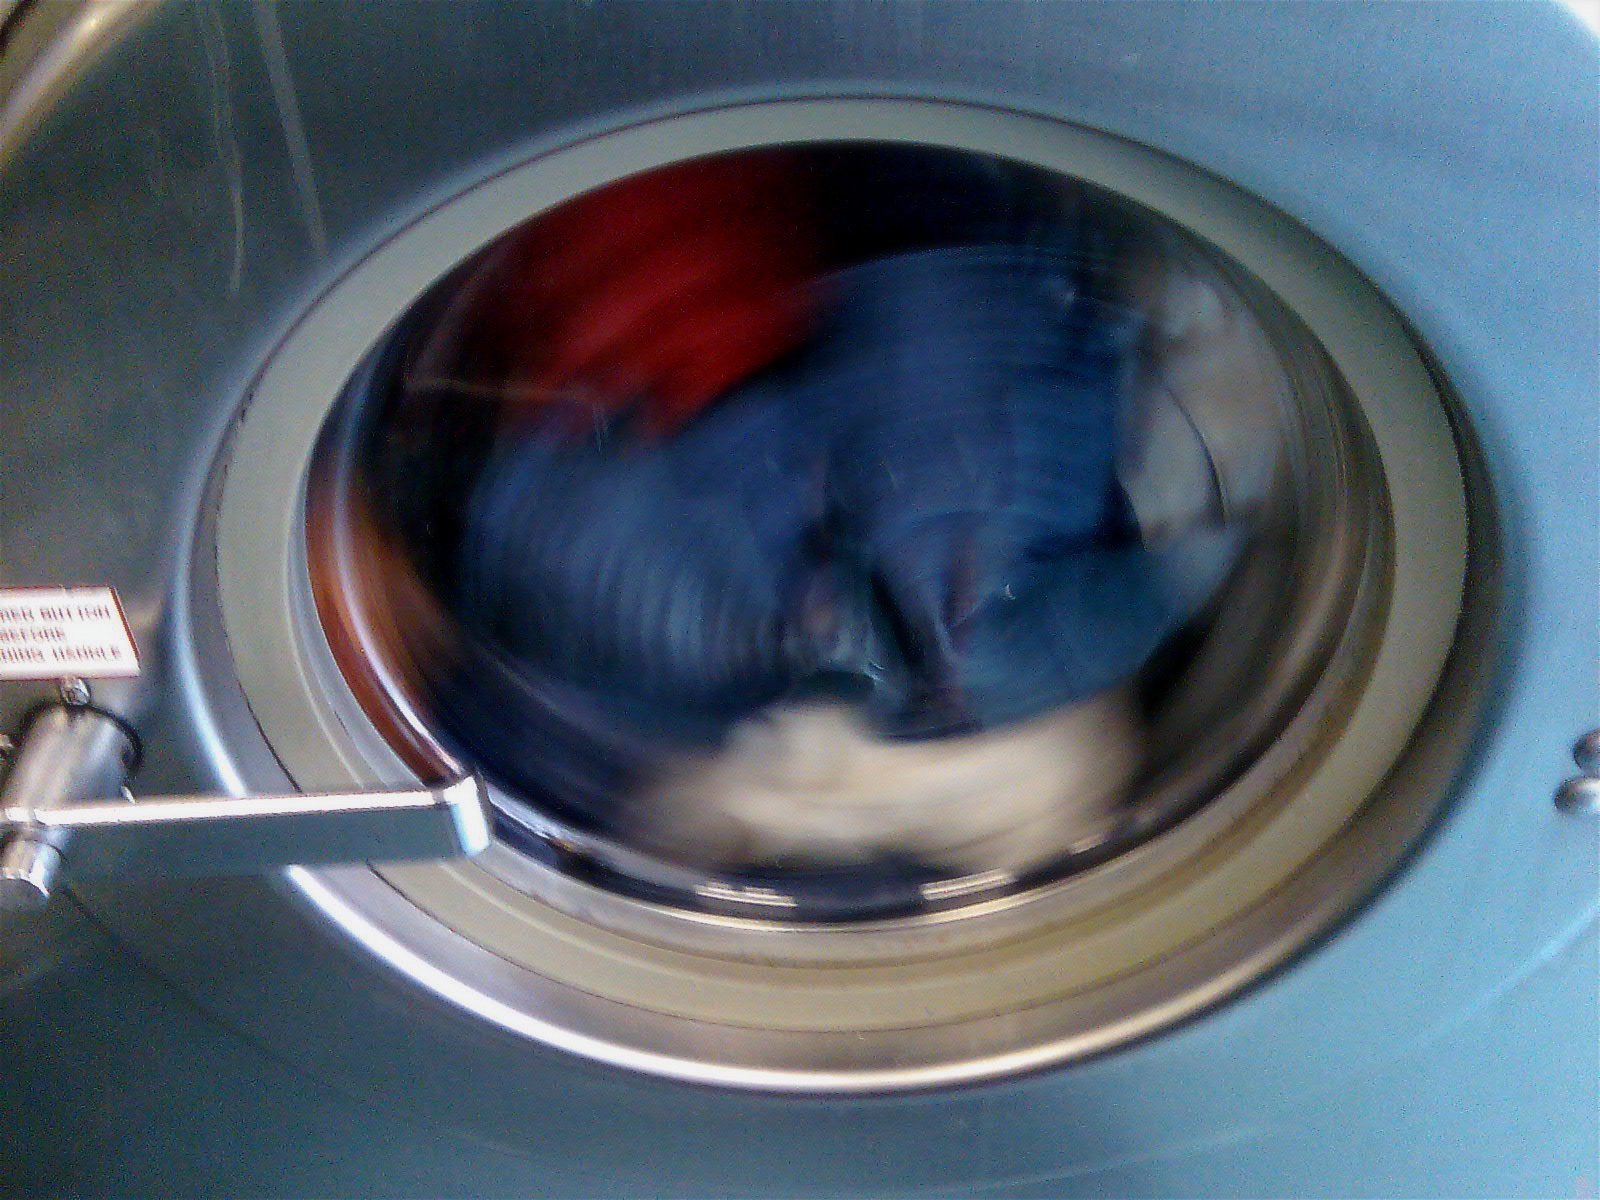 a man wearing a blue shirt looking inside of a washing machine